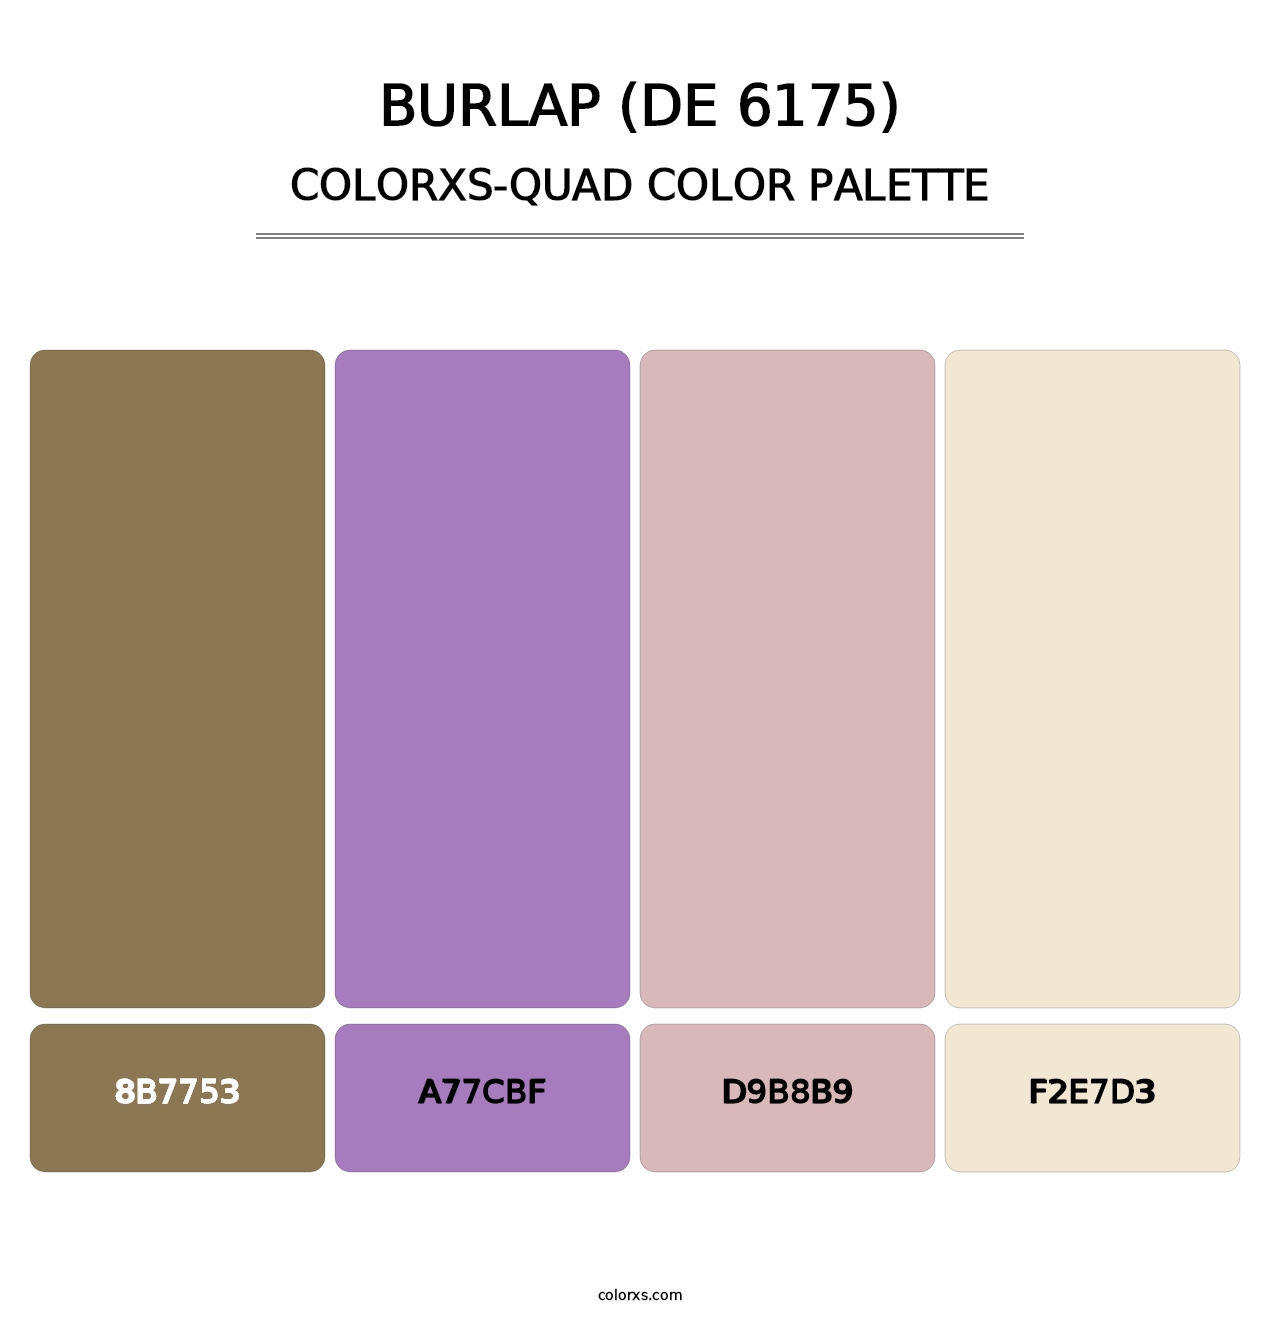 Burlap (DE 6175) - Colorxs Quad Palette